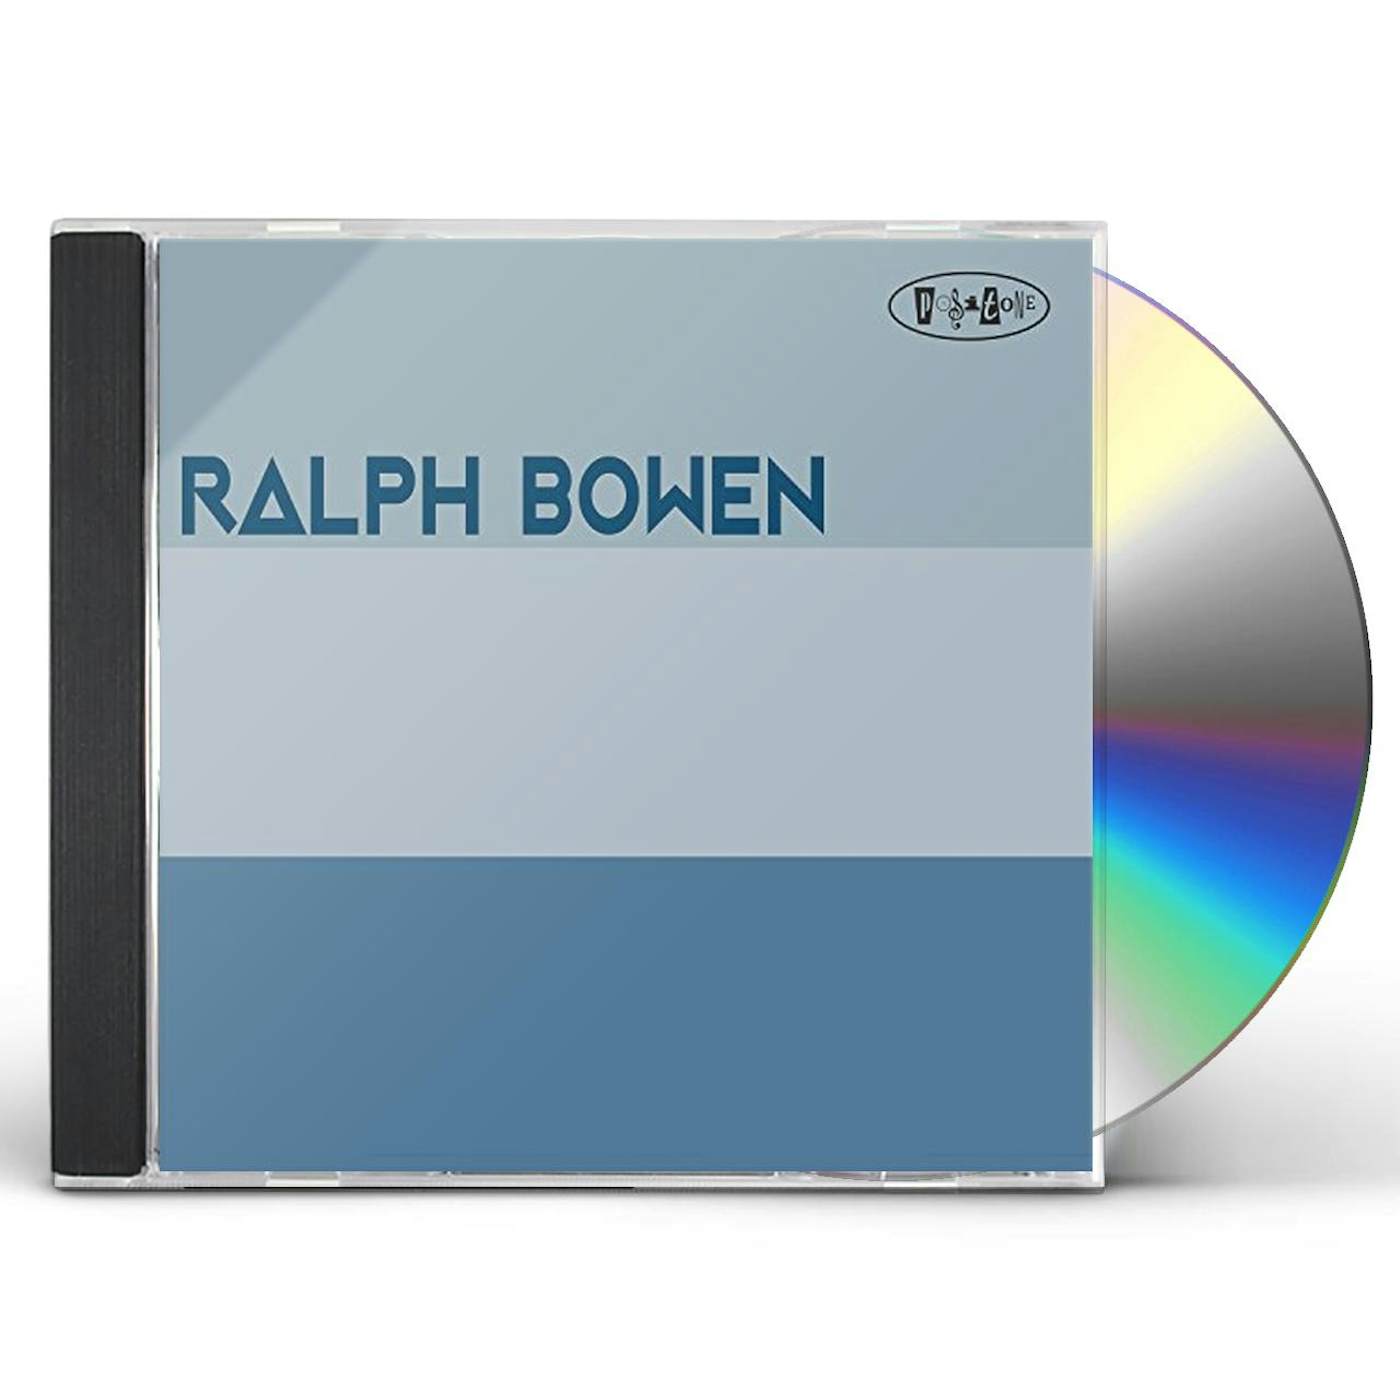 RALPH BOWEN CD